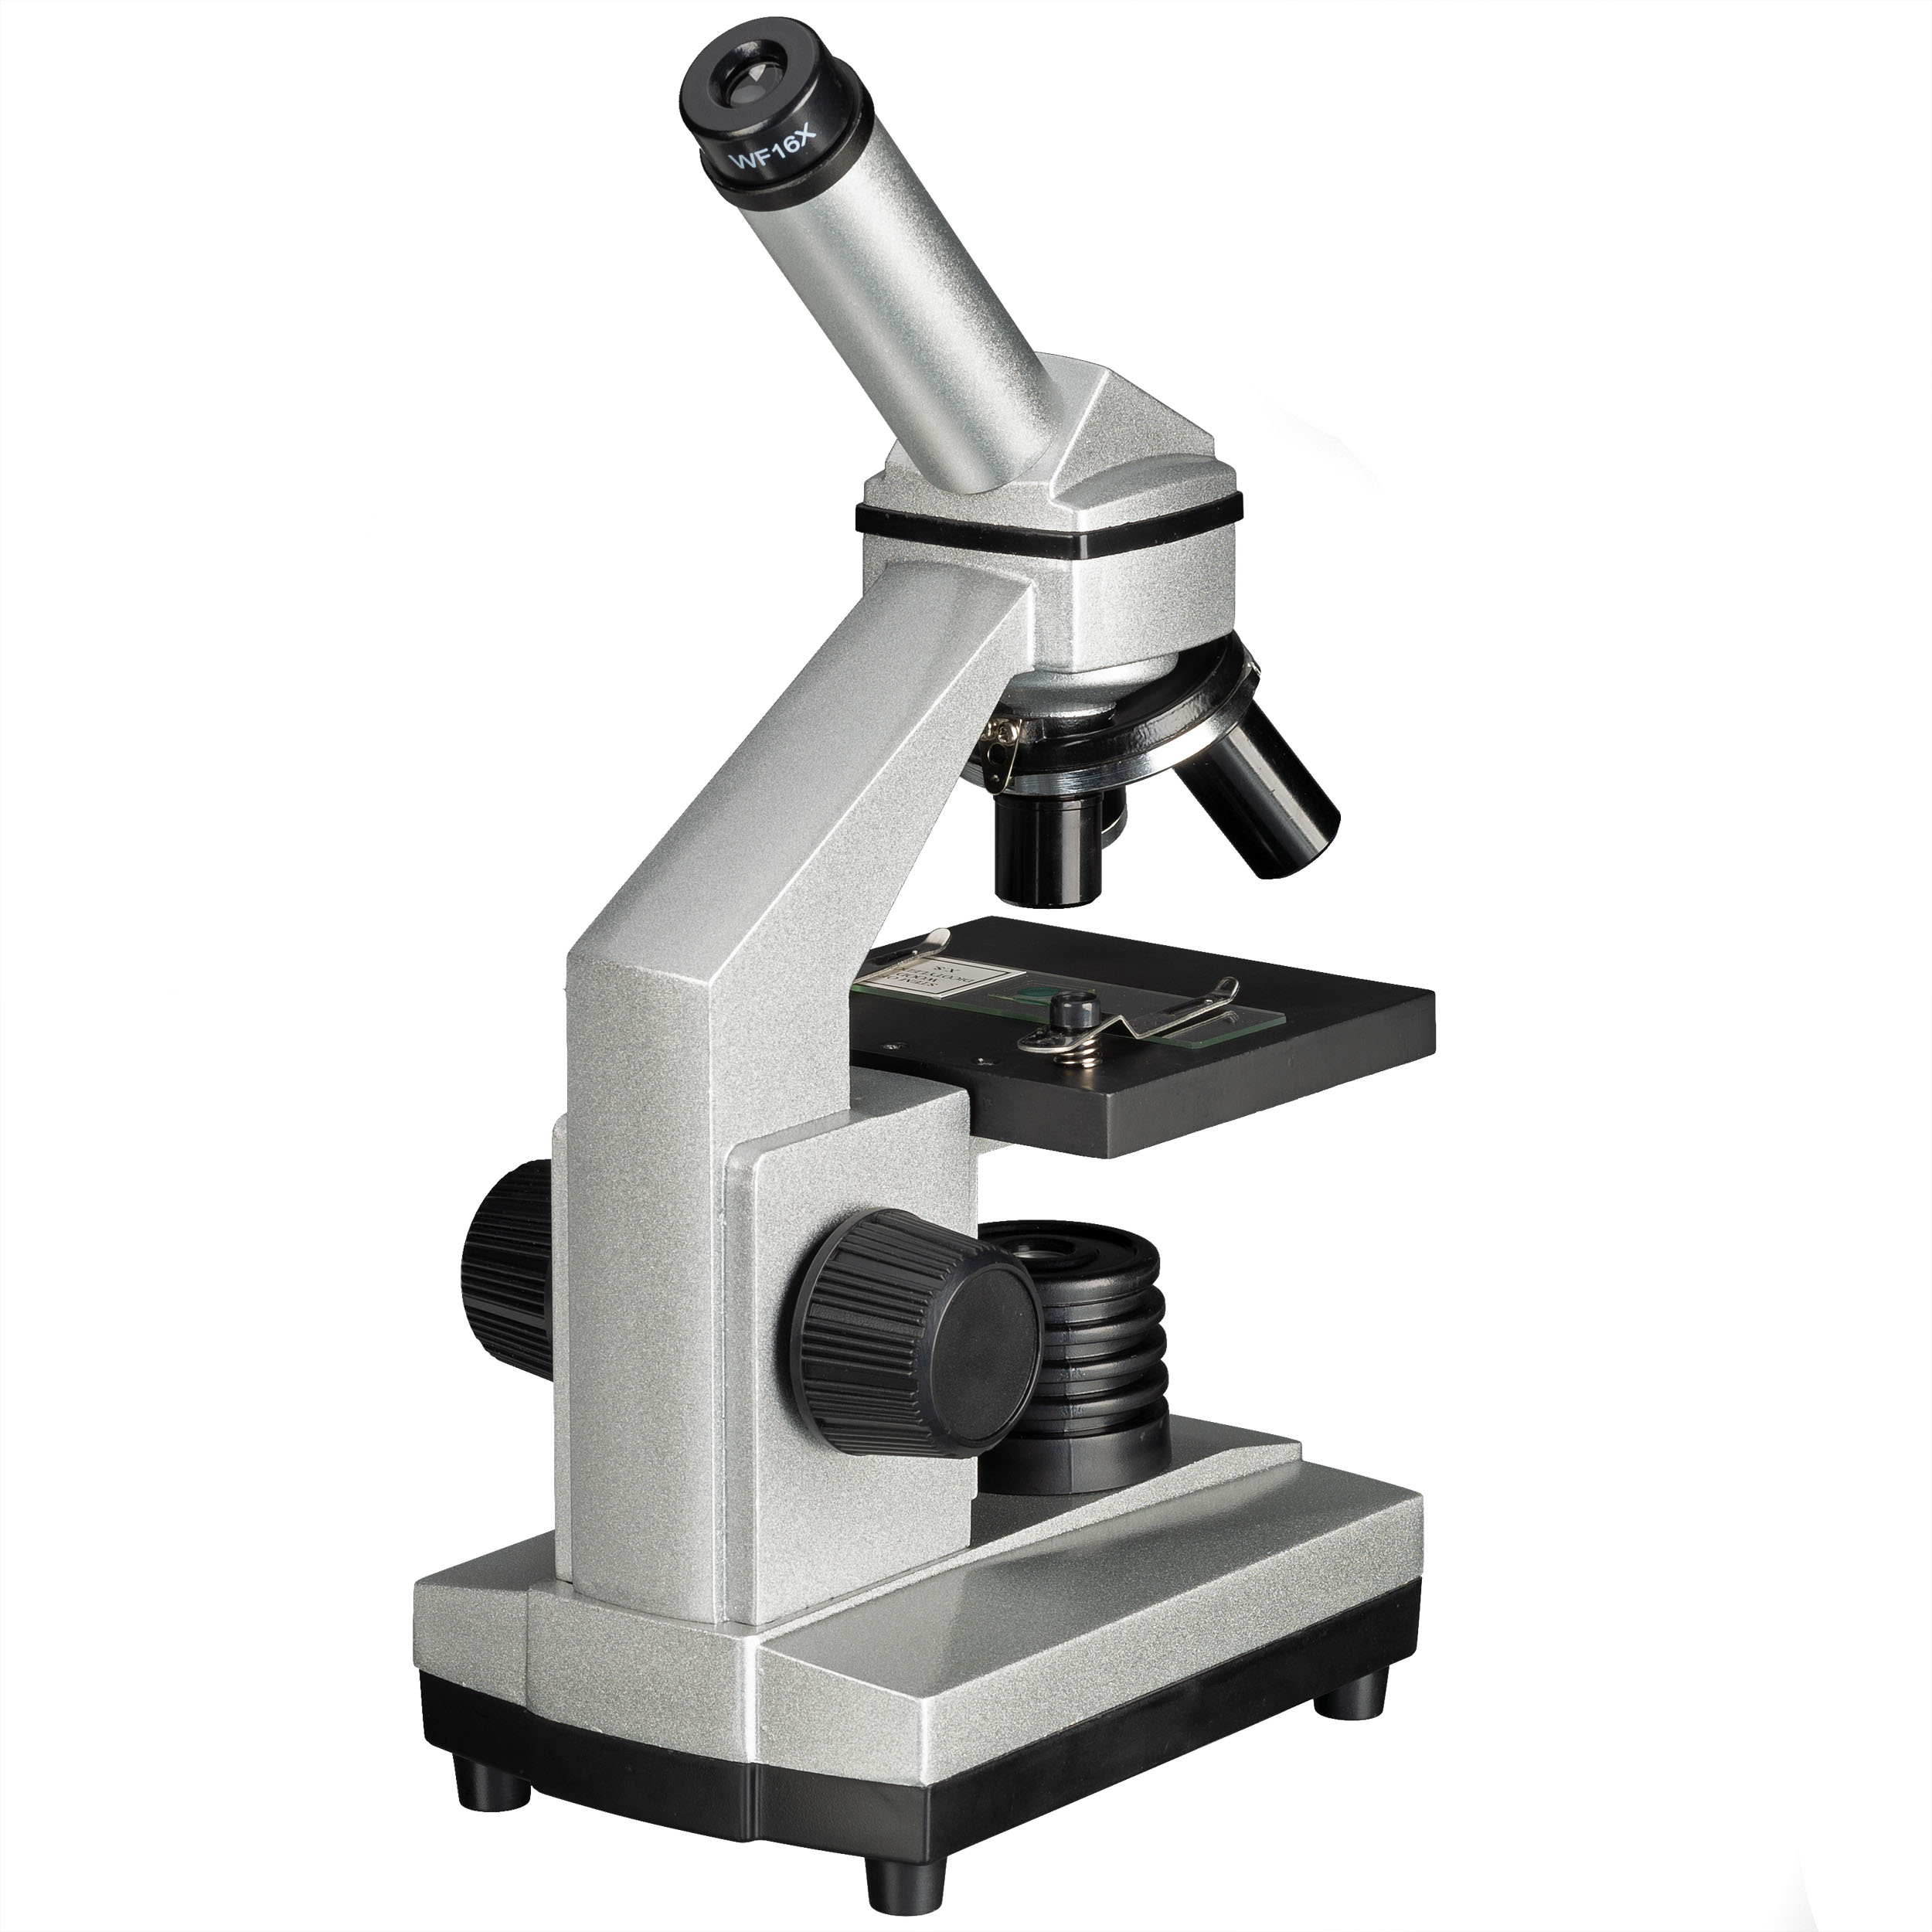 BRESSER JUNIOR 40x-1024x Microscopio con Cámara ocular HD